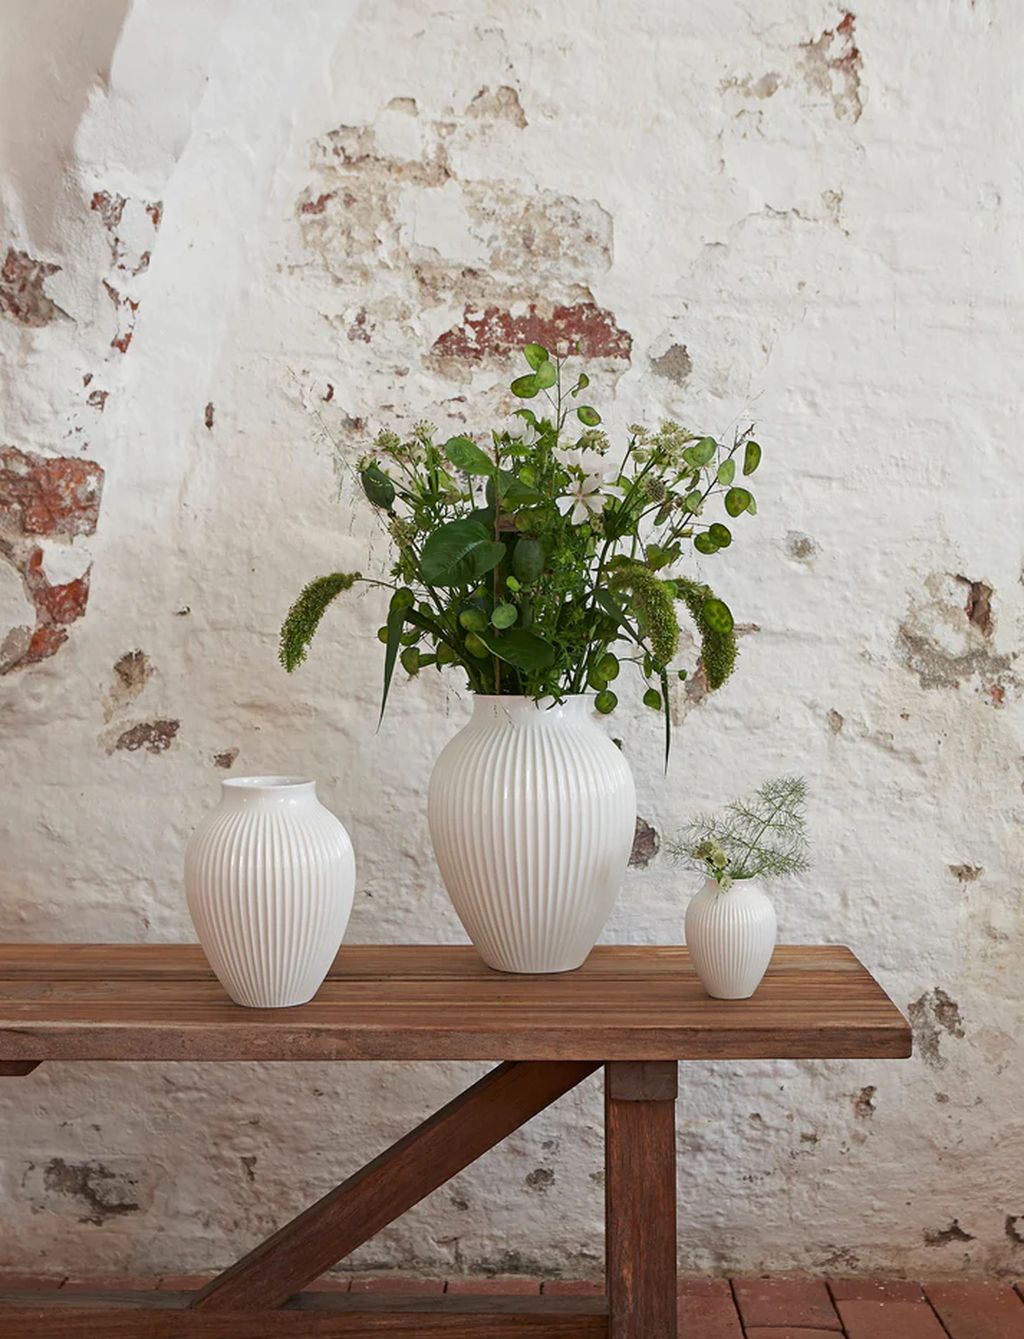 Knabstrup Keramik Vase mit Rillen H 27 Cm, Weiß